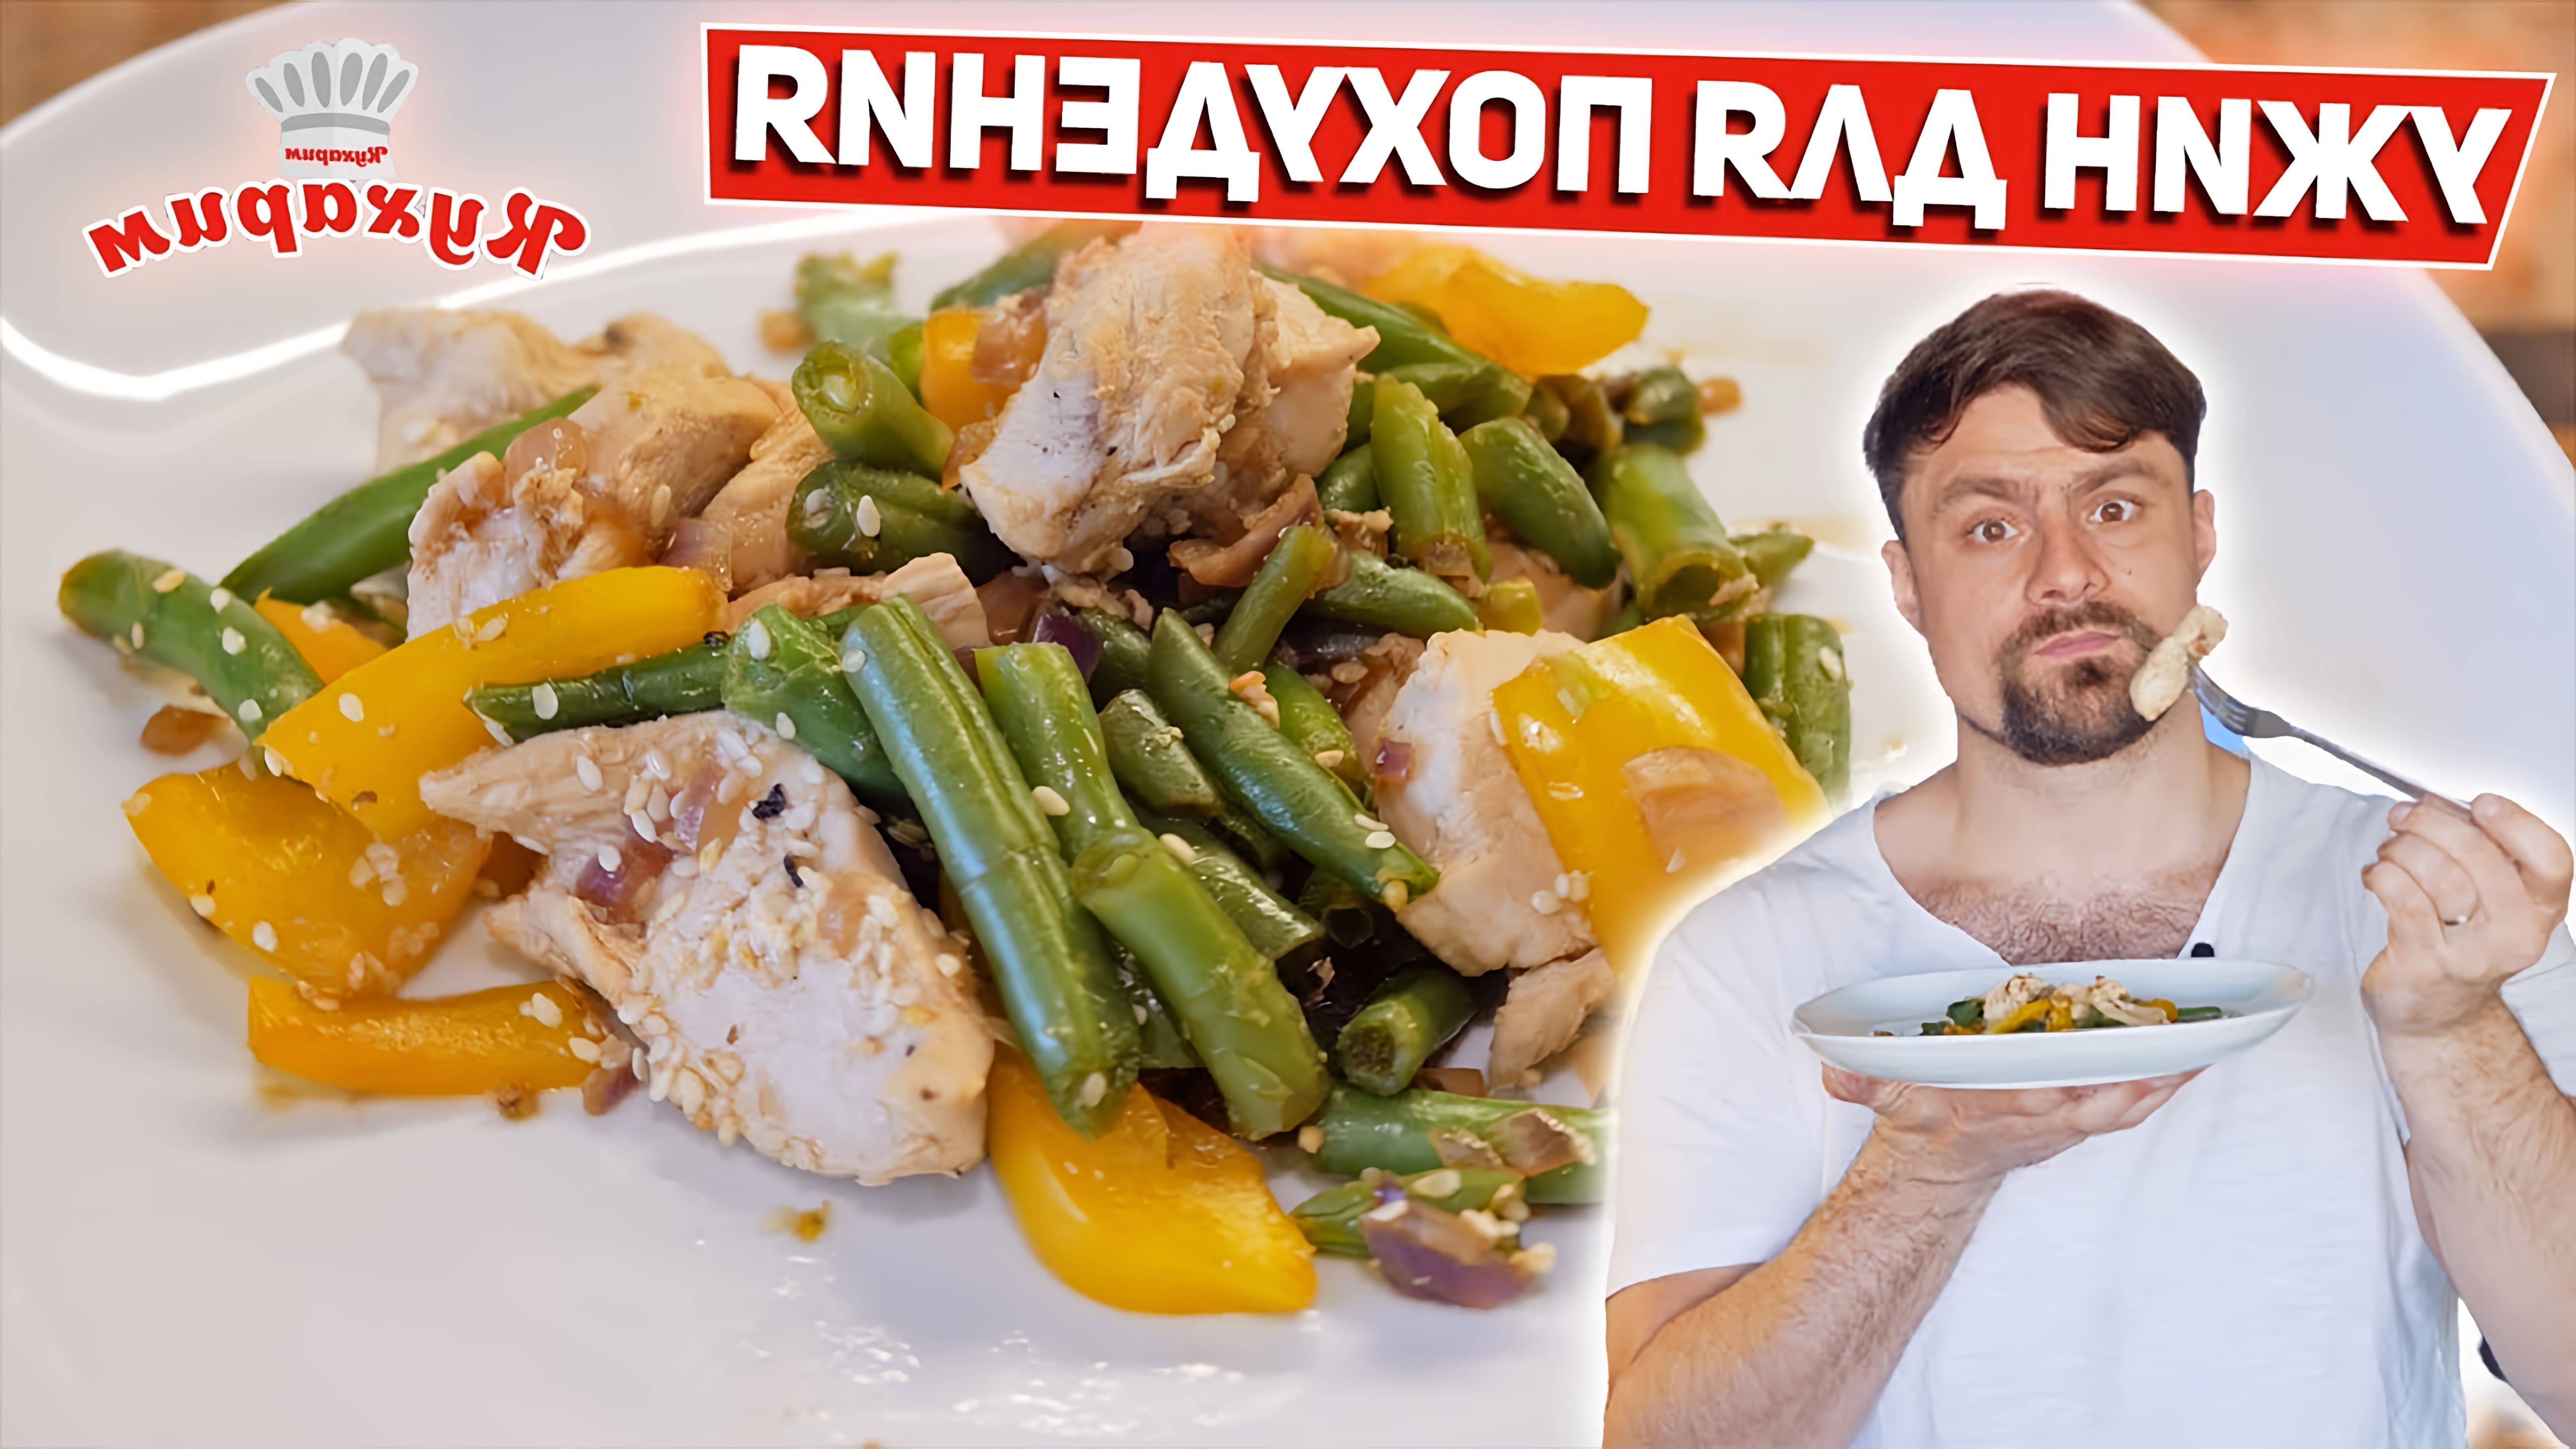 В этом видео Антон показывает рецепт низкокалорийного ужина, который идеально подходит для тех, кто худеет